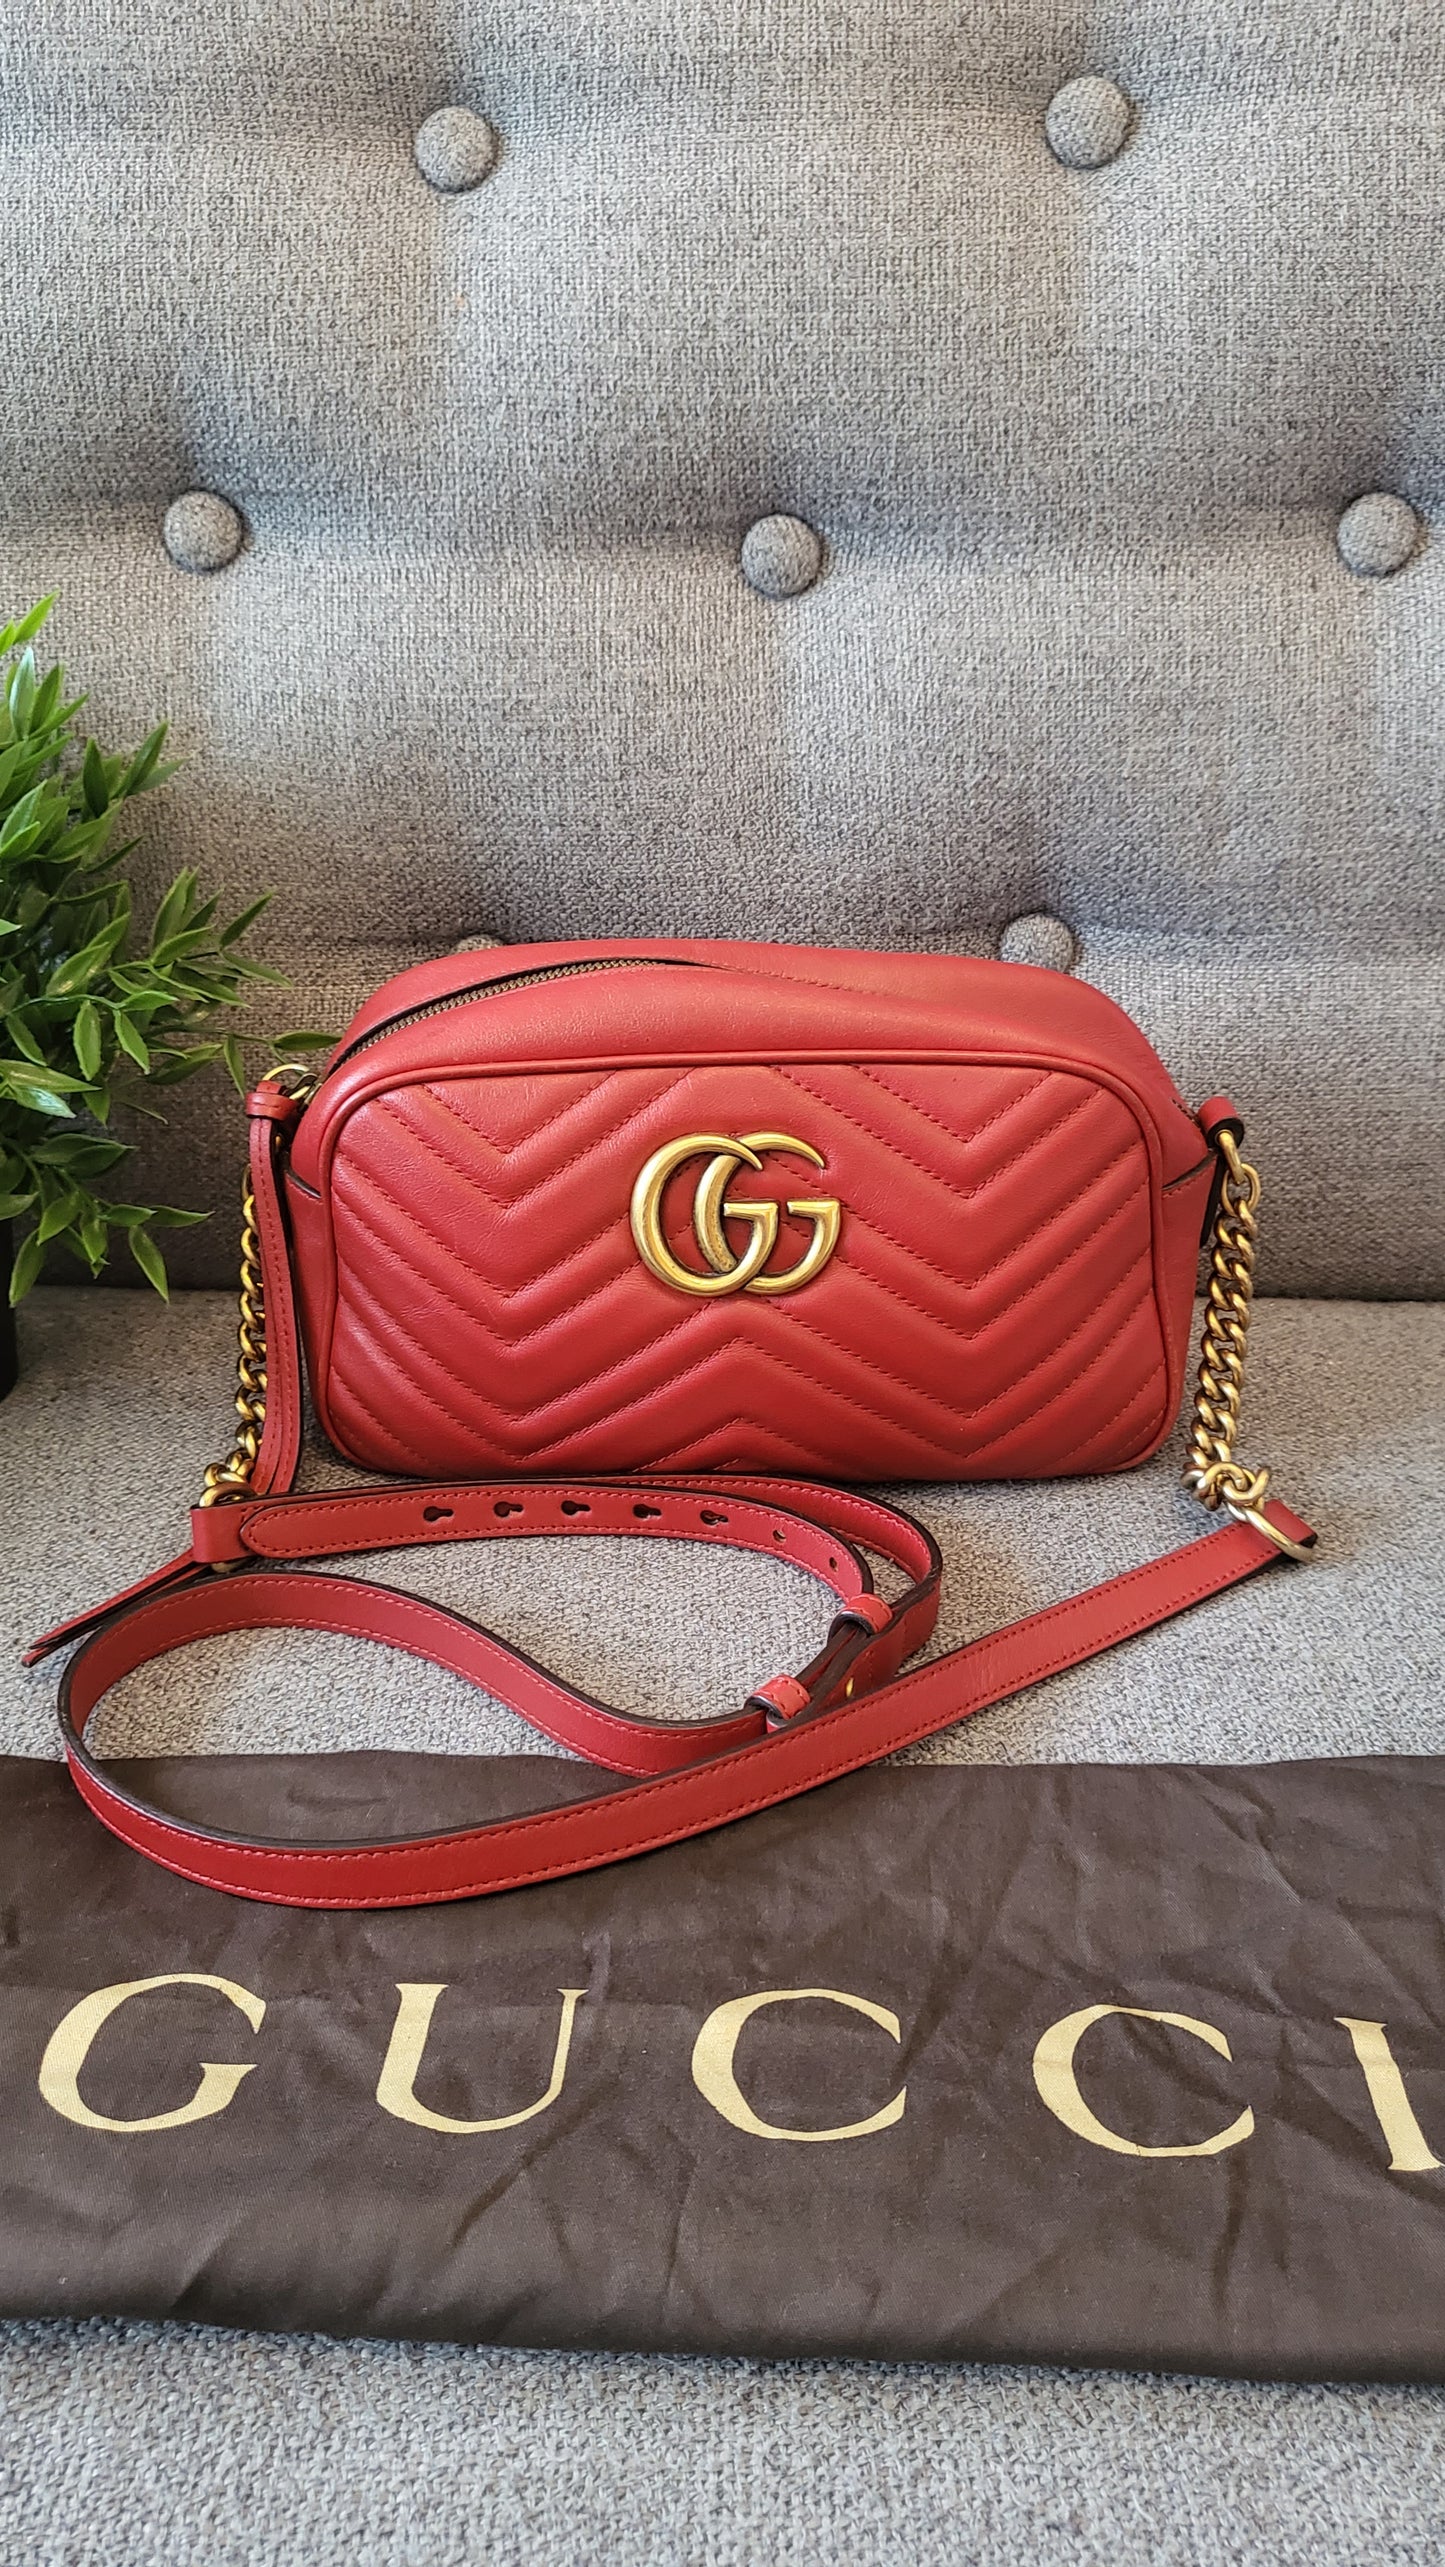 Gucci Marmont Camera bag